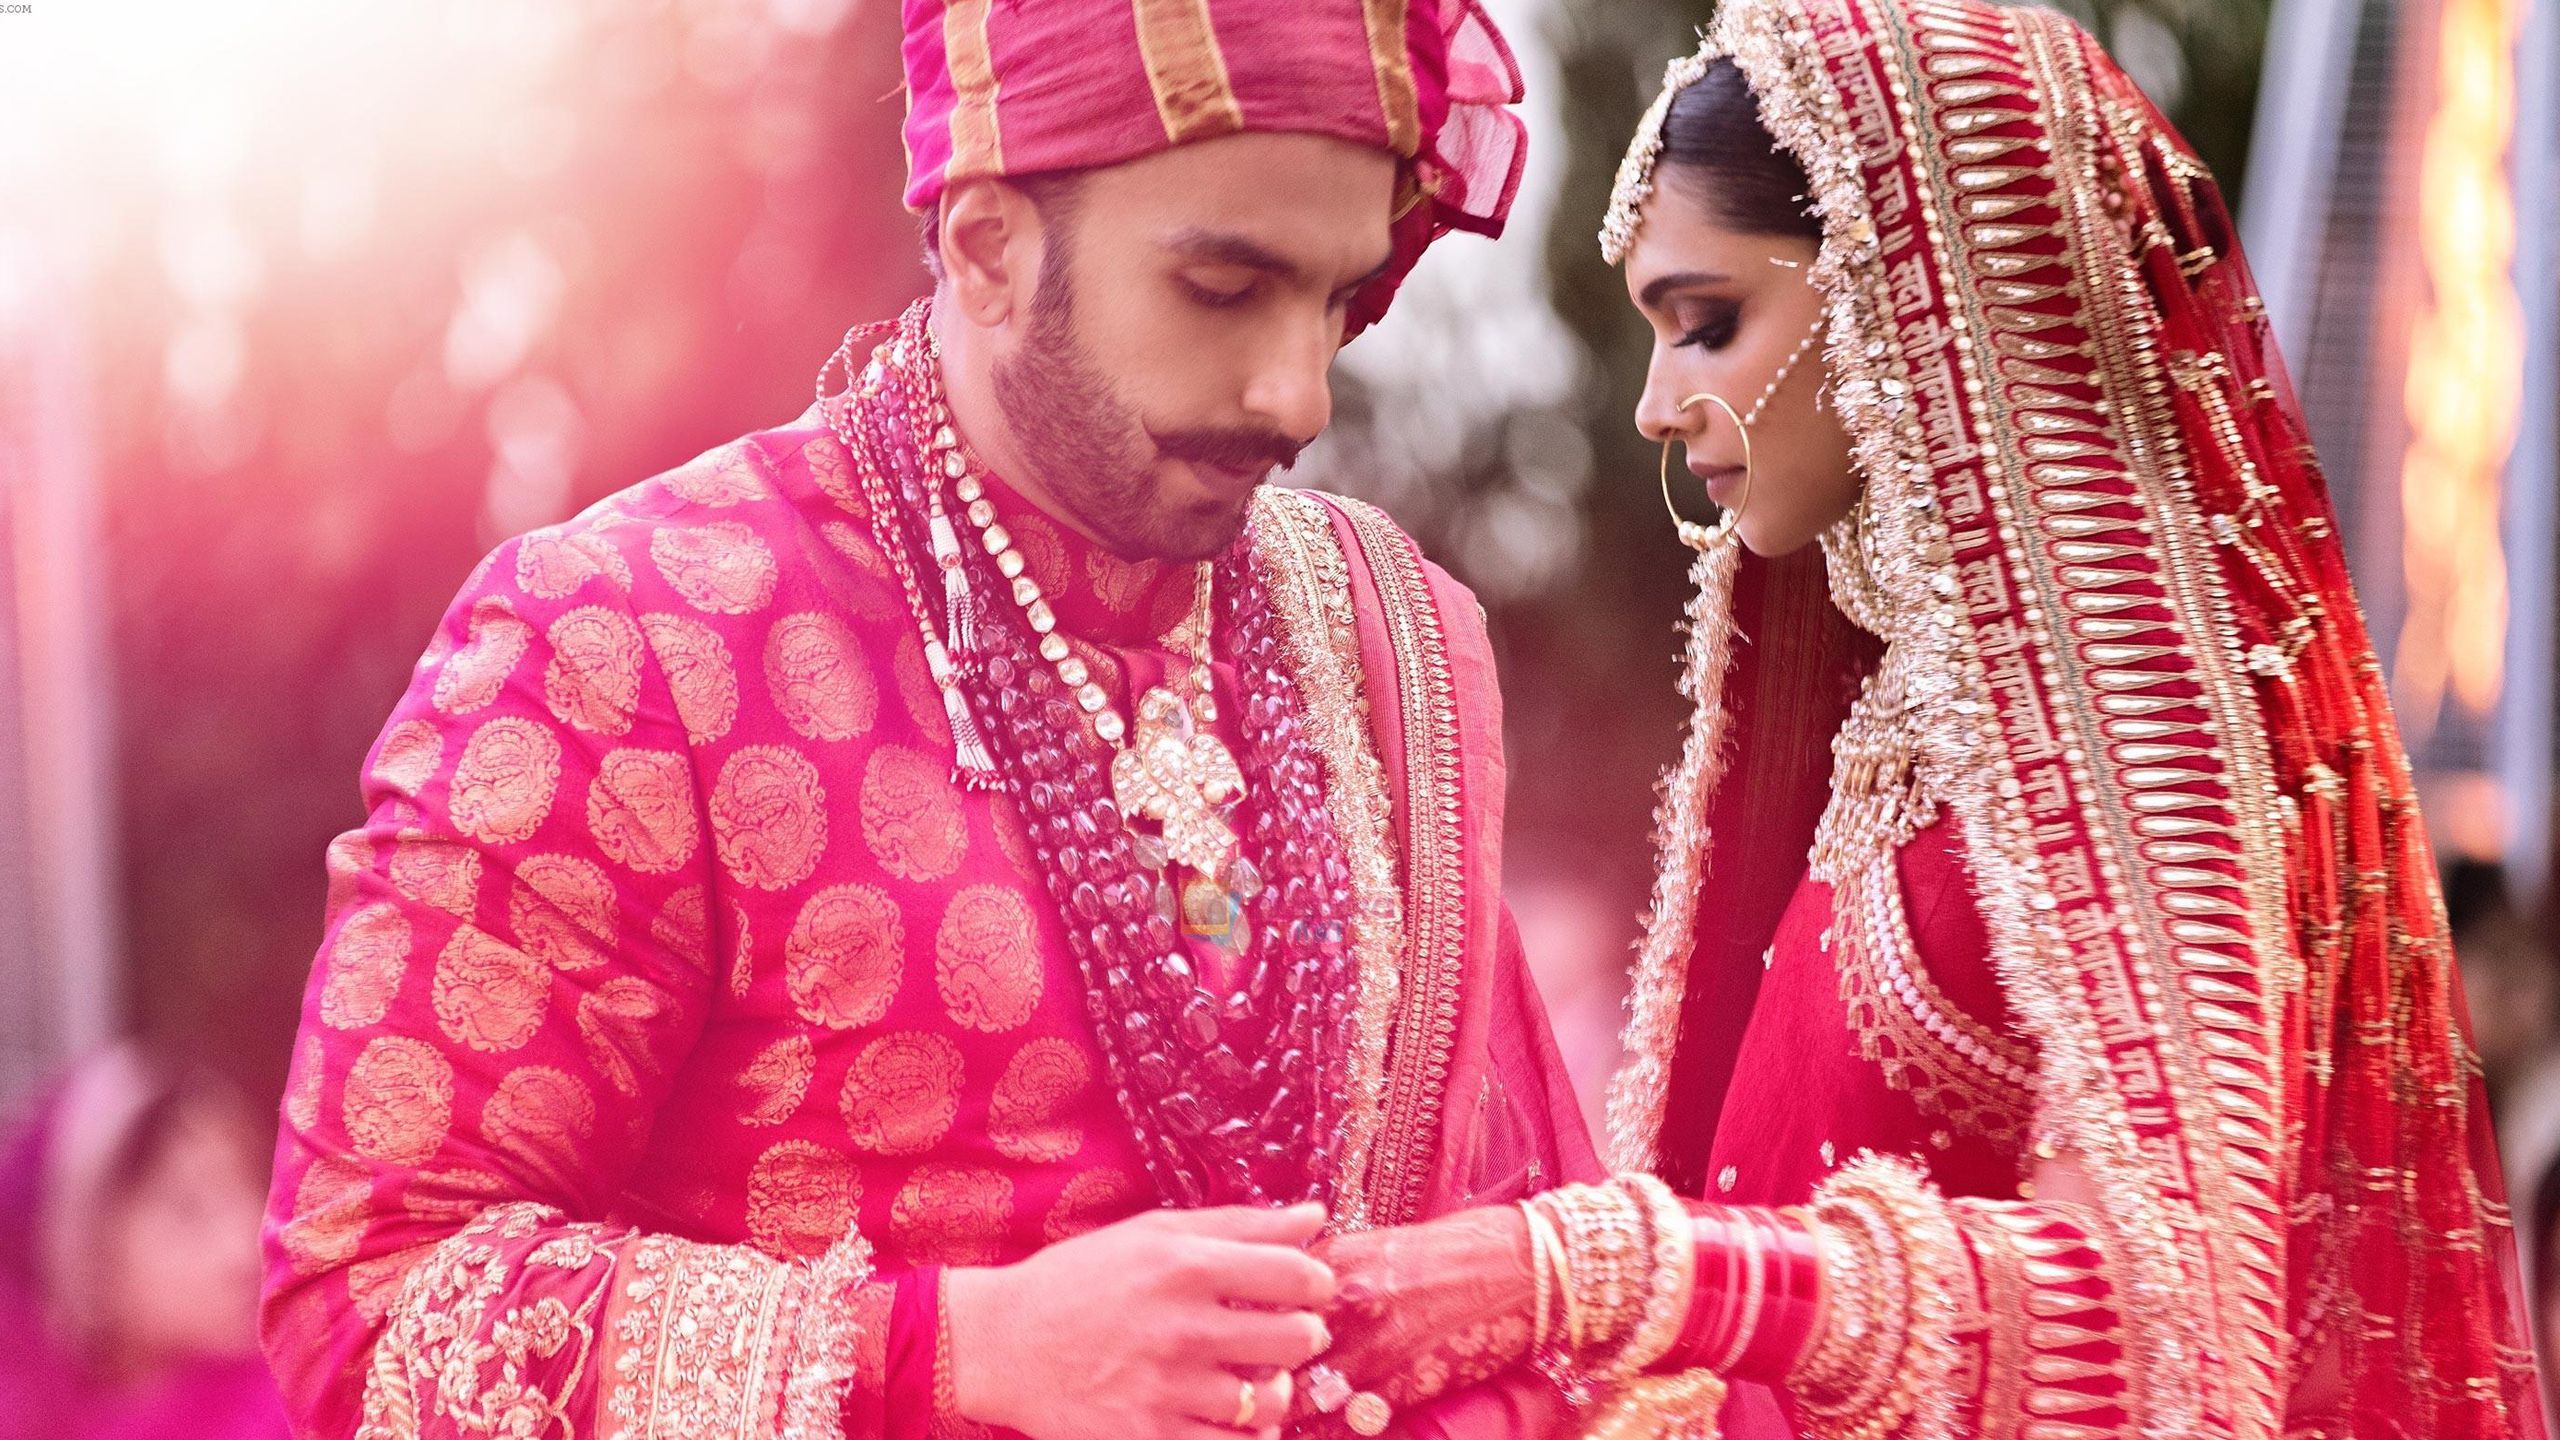 Marriage Ceremony Image of Ranveer Singh with Deepika Padukone